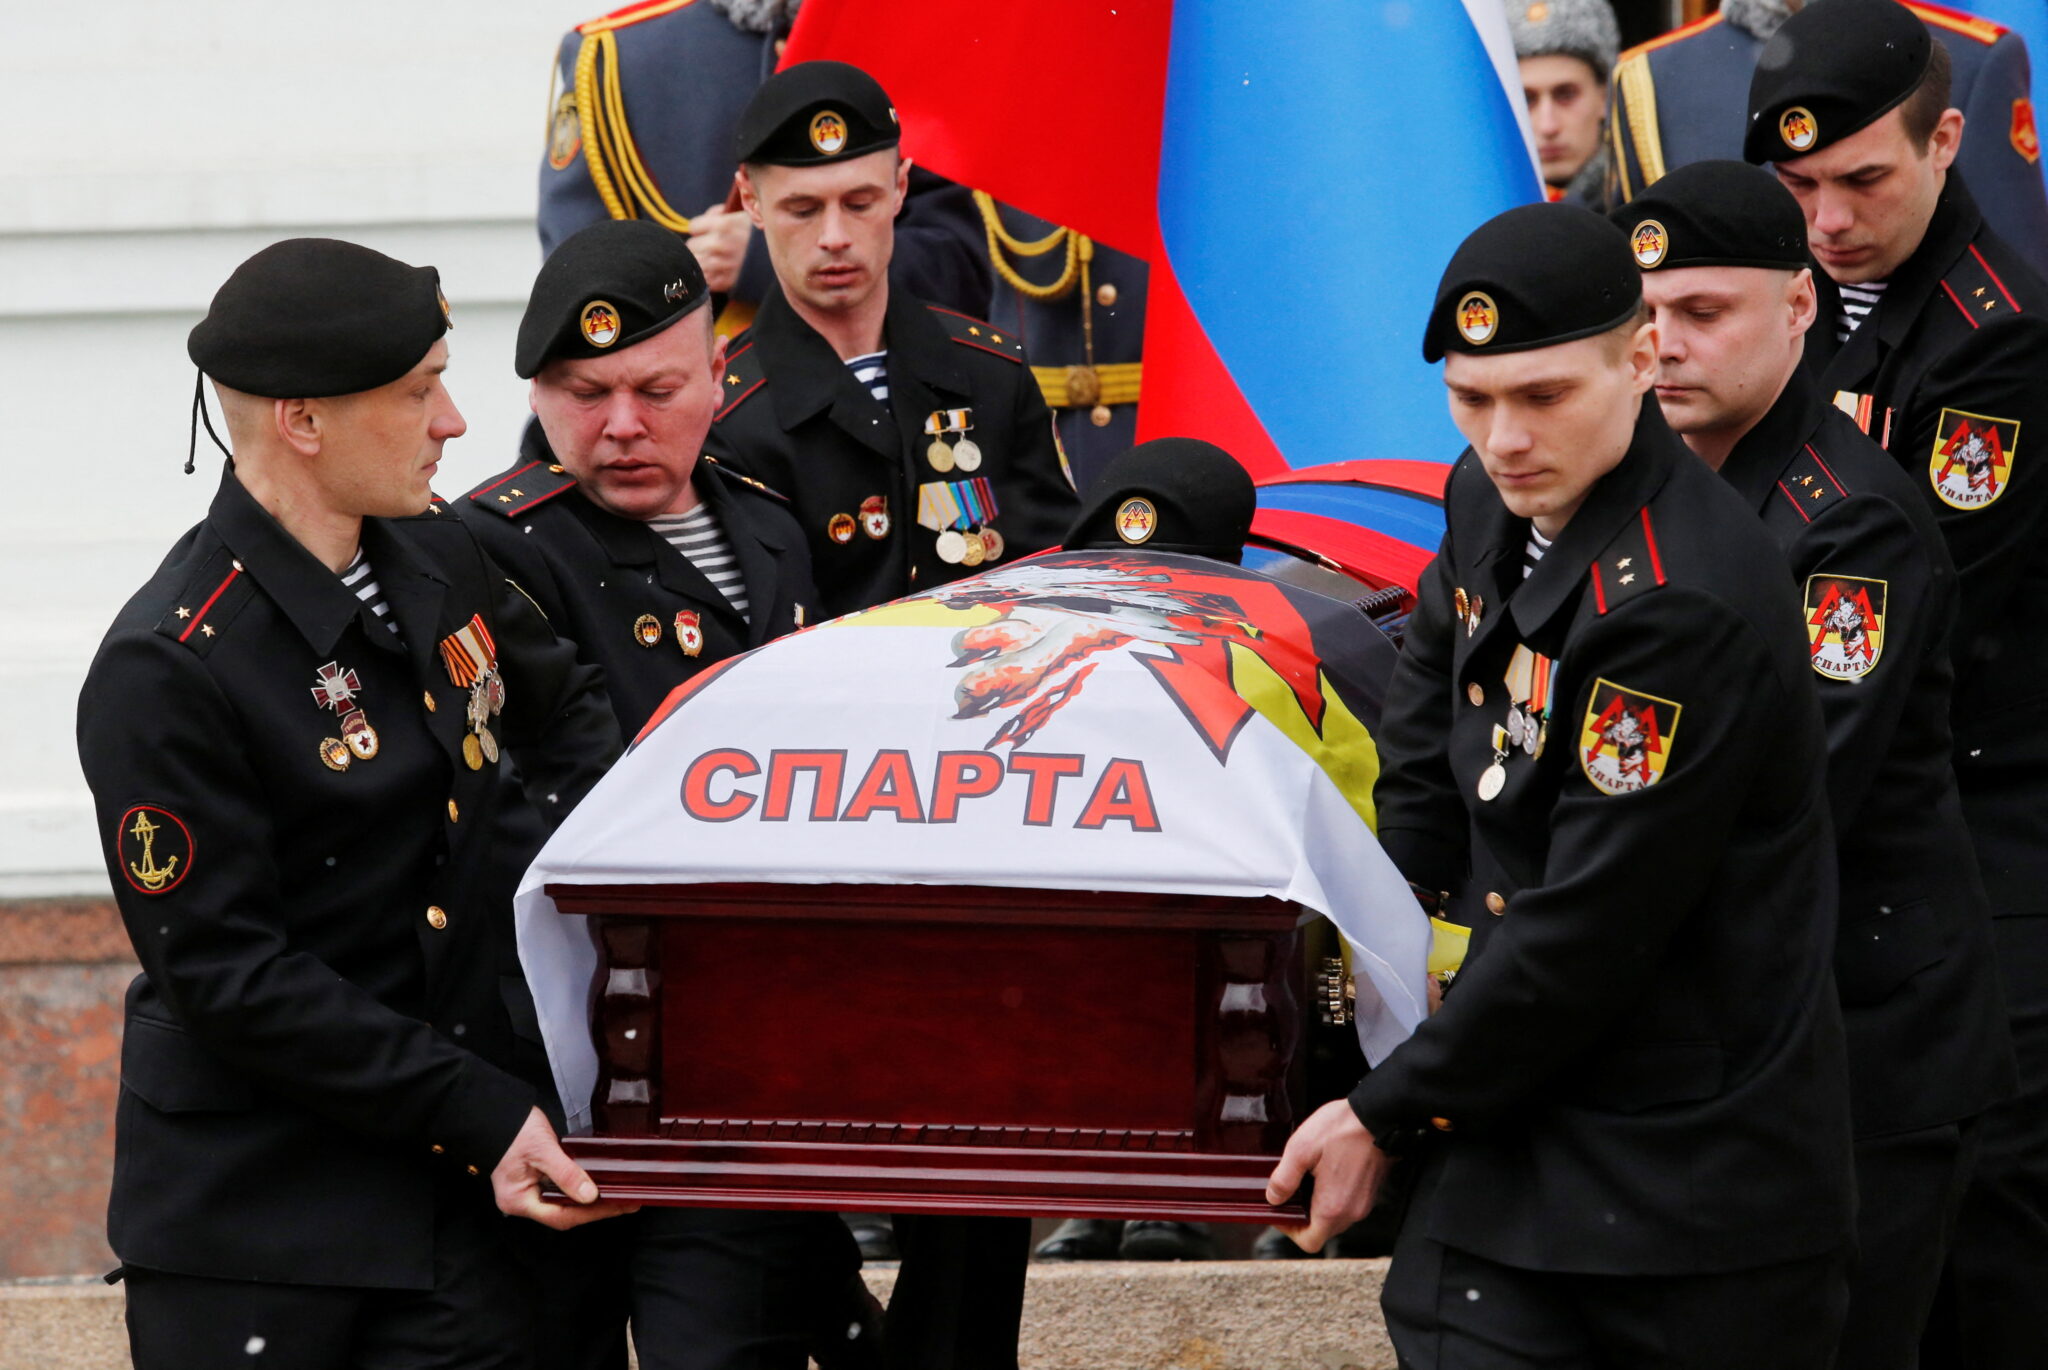 Церемония прощания с командиром батальона "Спарта" Владимиром Жогой в Донецке 7 марта 2022 года. Фото Alexander Ermochenko/Reuters/Scanpix/Leta.